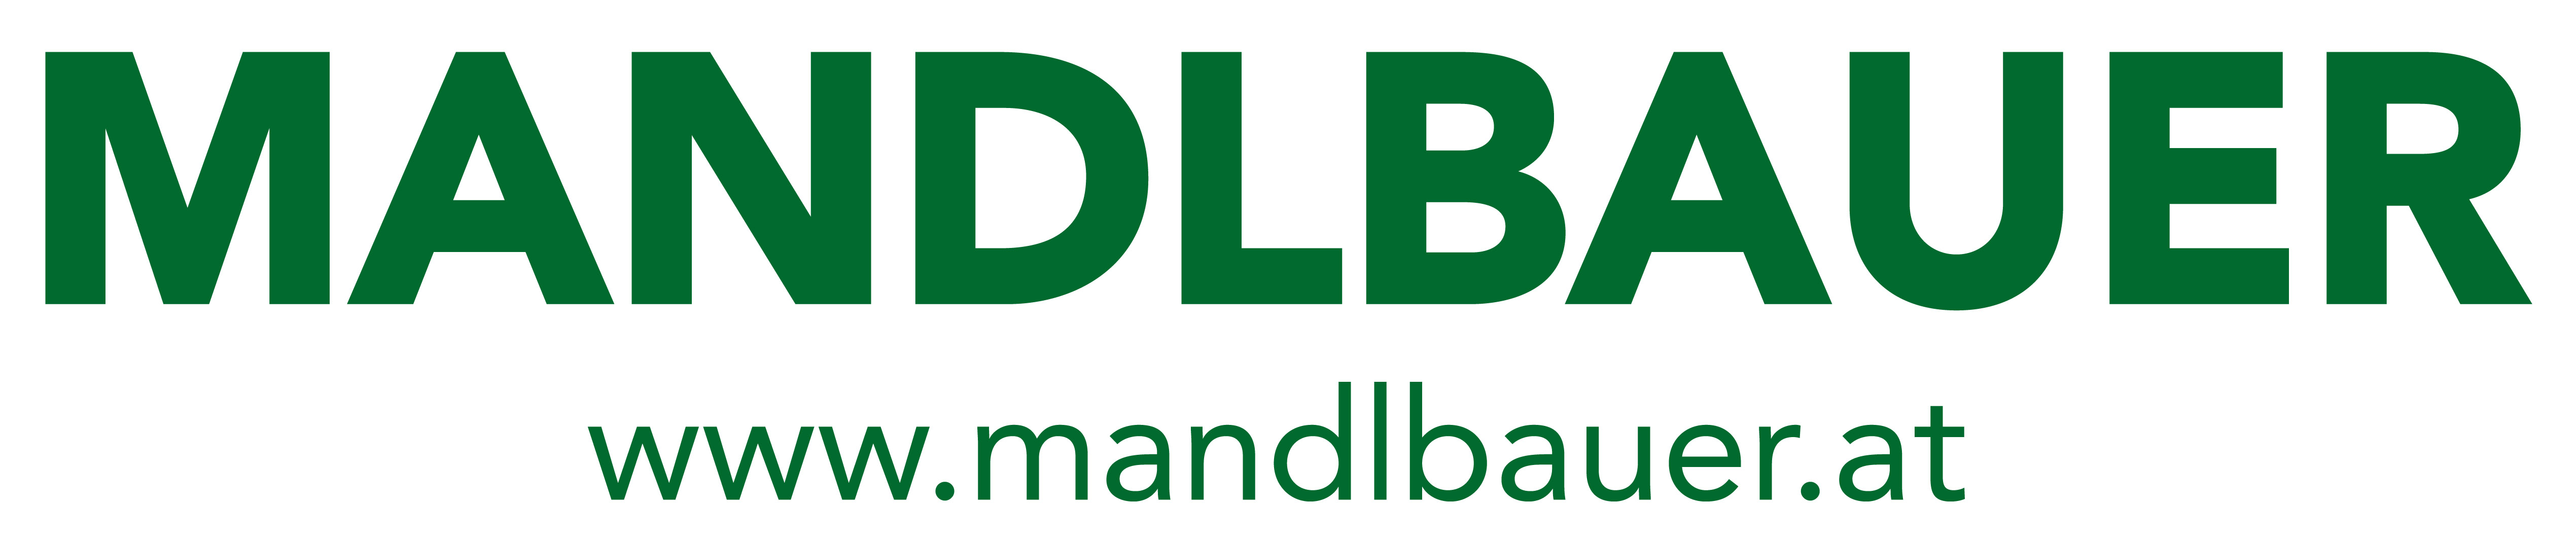 Mandlbauer Bau GmbH Logo